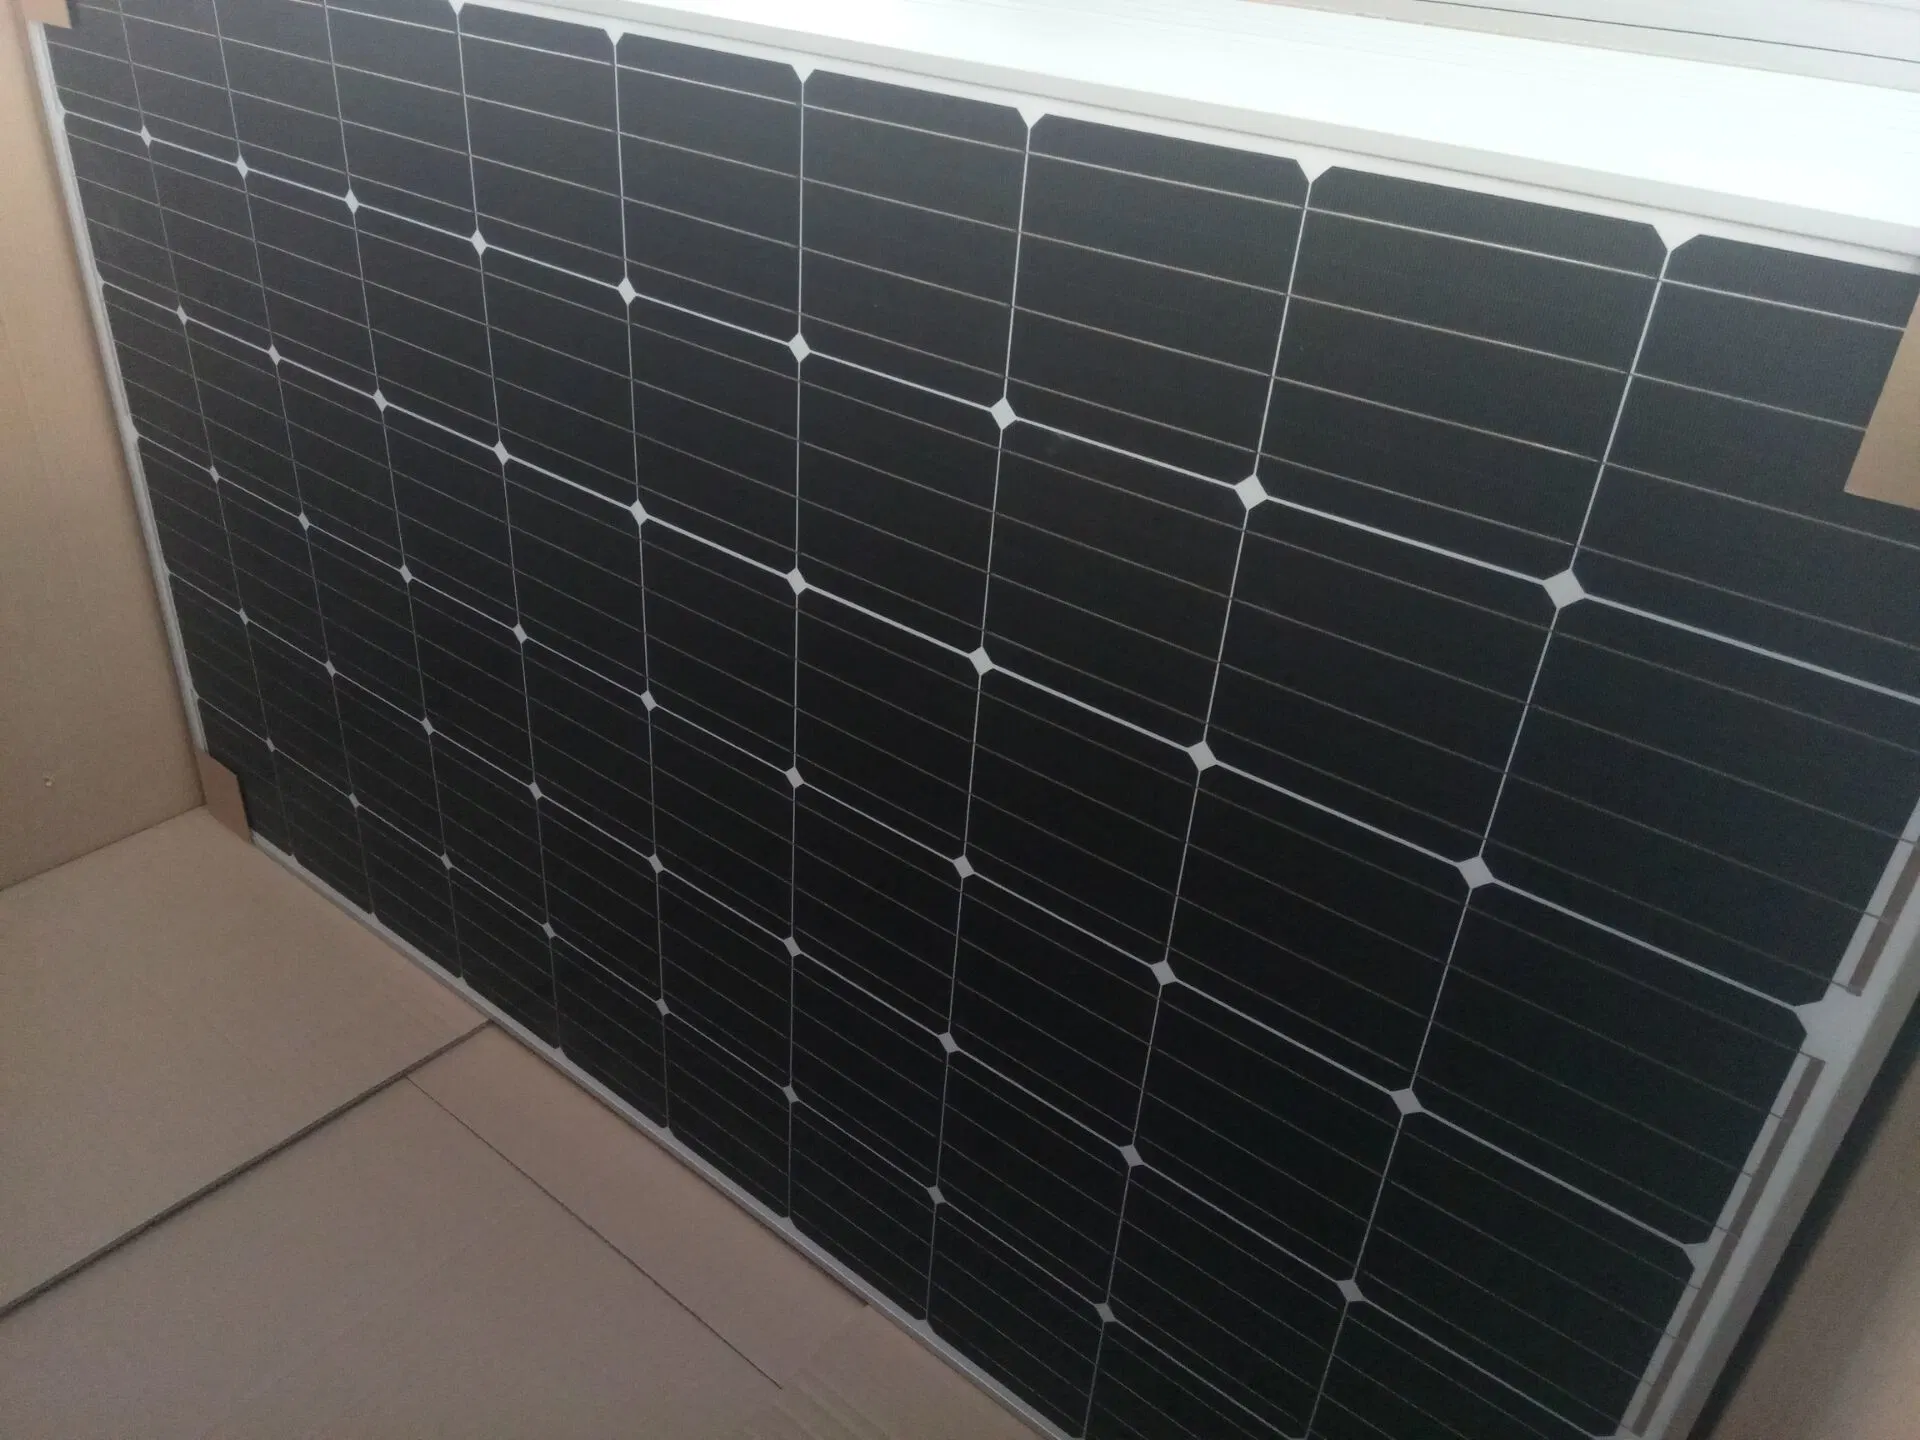 Juego completo kit de energía solar para el hogar utiliza 10kw sistema generador de paneles solares